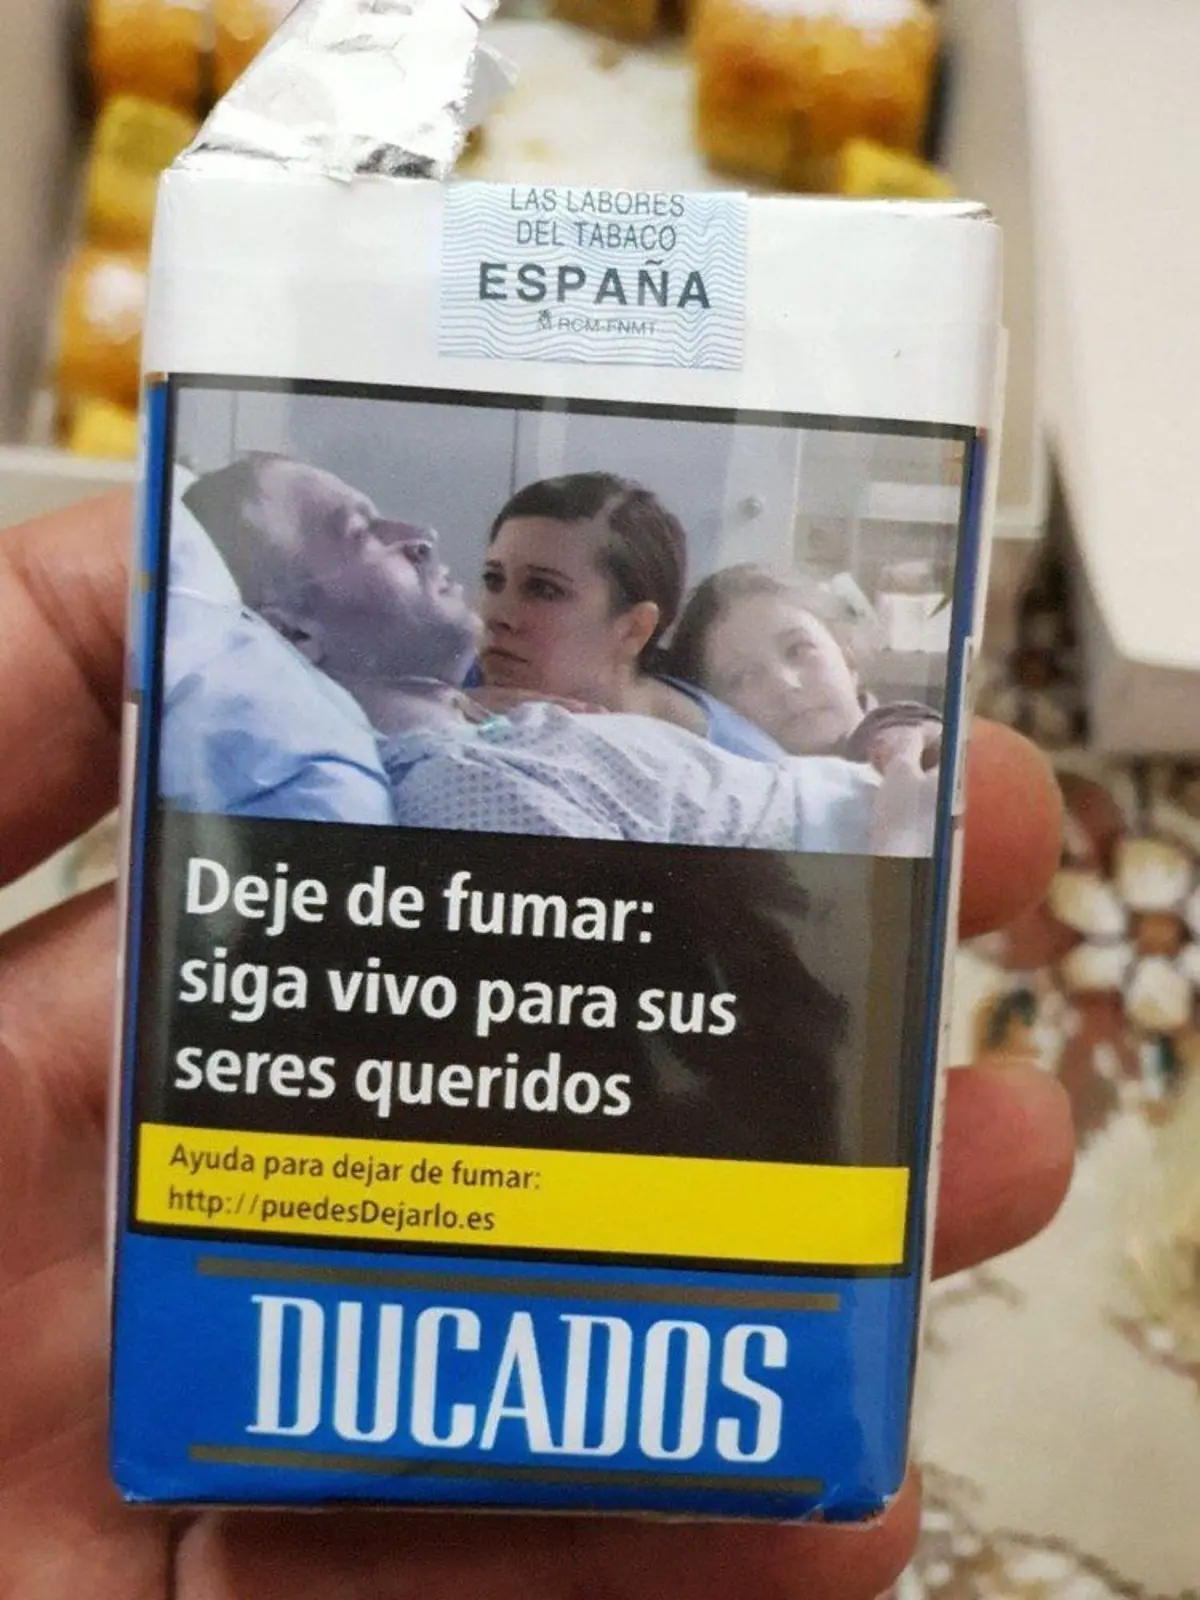 پیام خلاقانه روی پاک سیگاری در اسپانیا